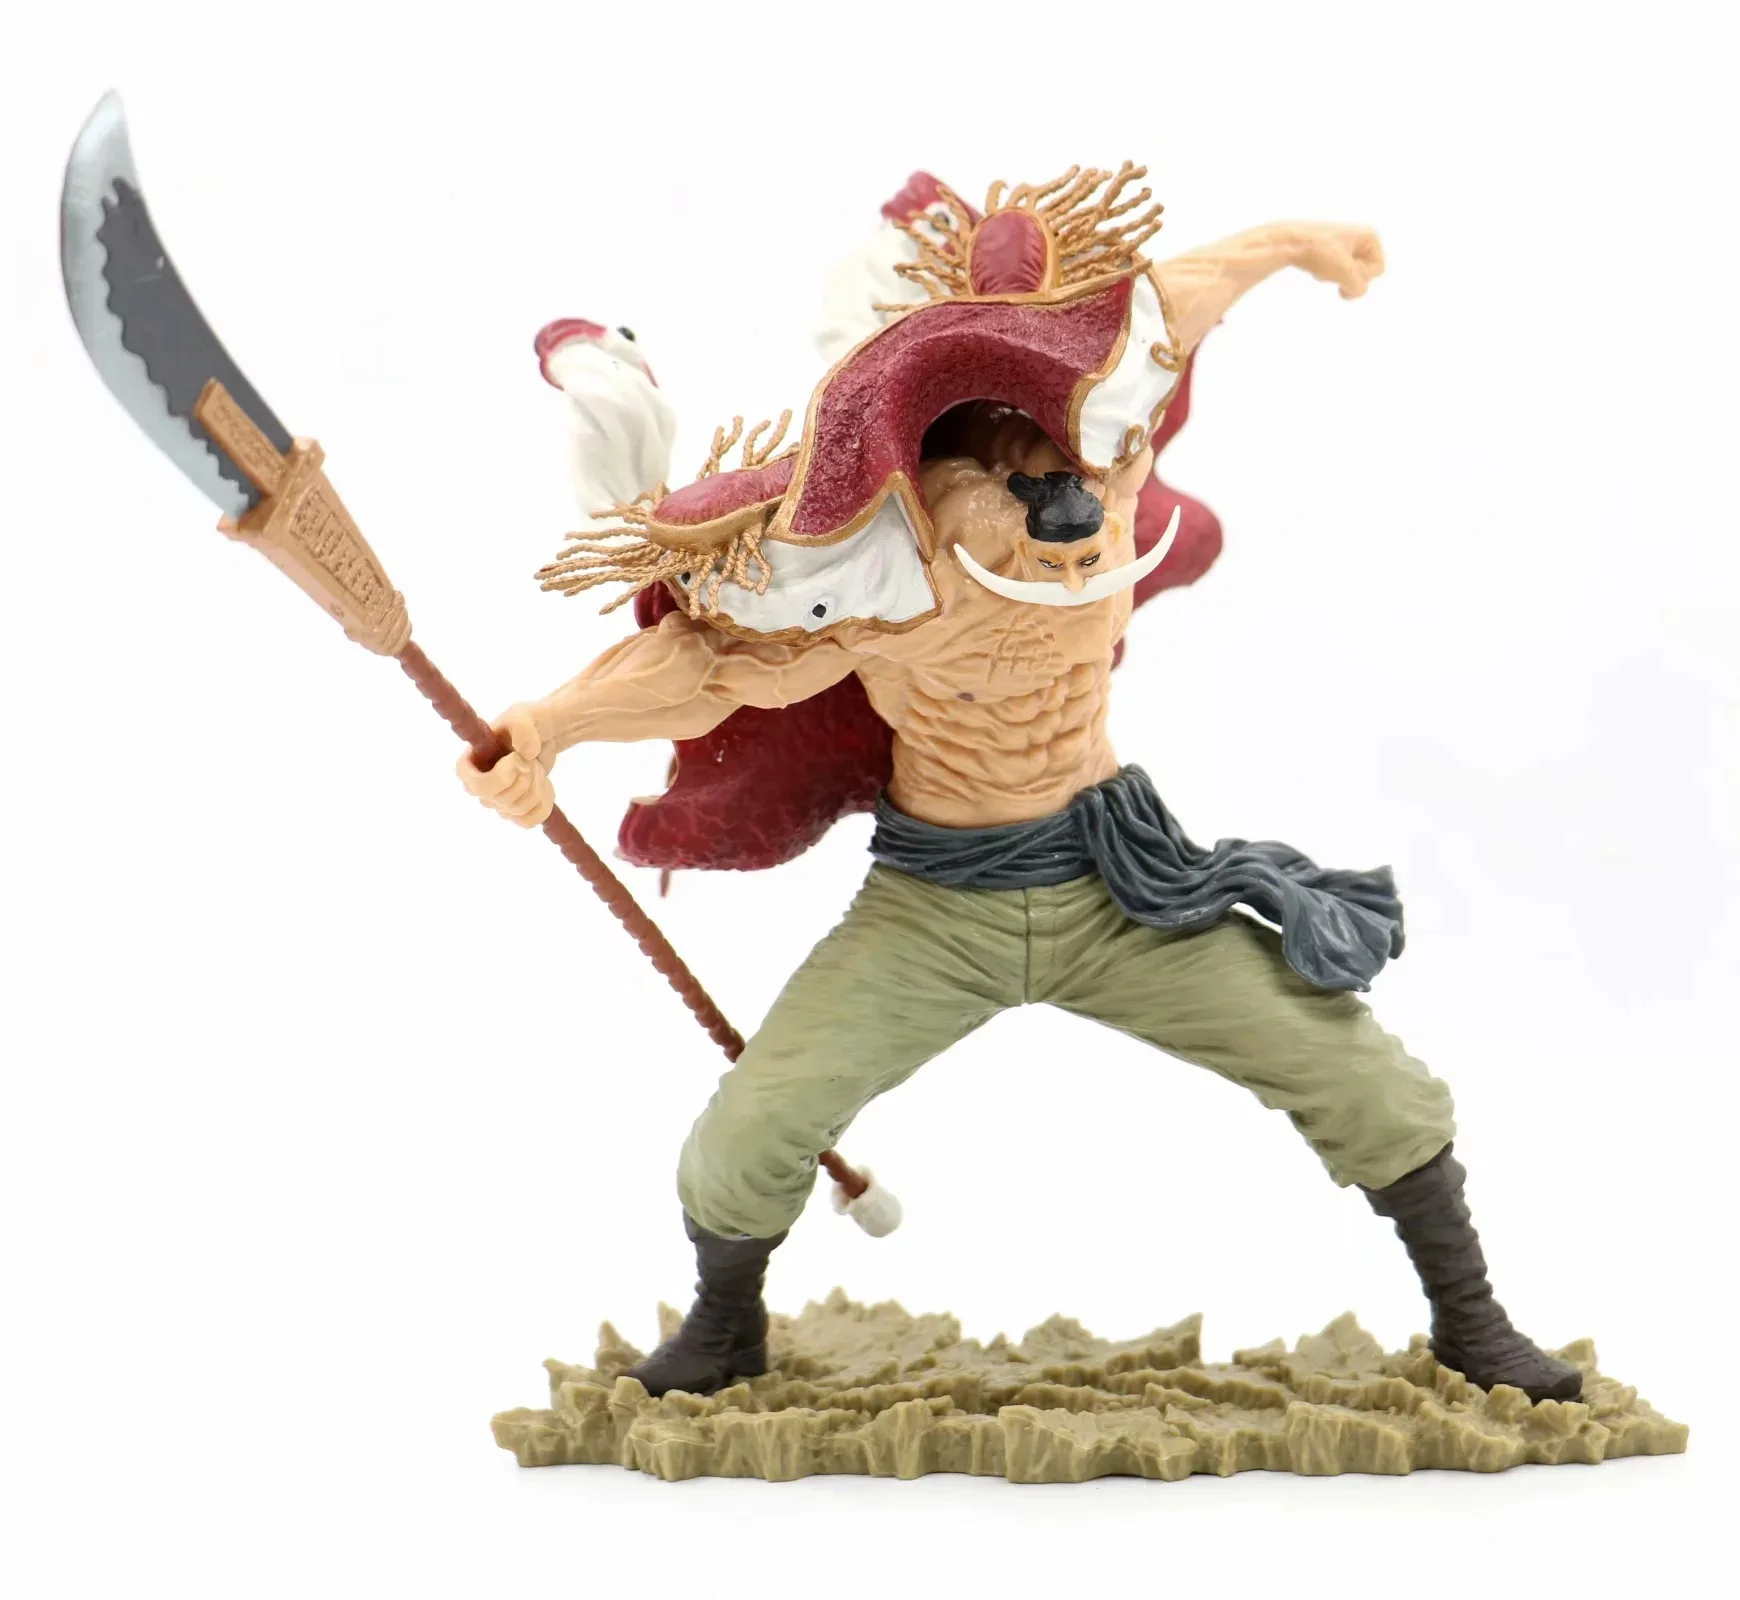 

Аниме One Piece белая борода Пираты Эдвард Ньюгейт 20th Battle Ver. GK ПВХ экшн-Фигурка Статуя Коллекционная модель игрушки кукла 24 см